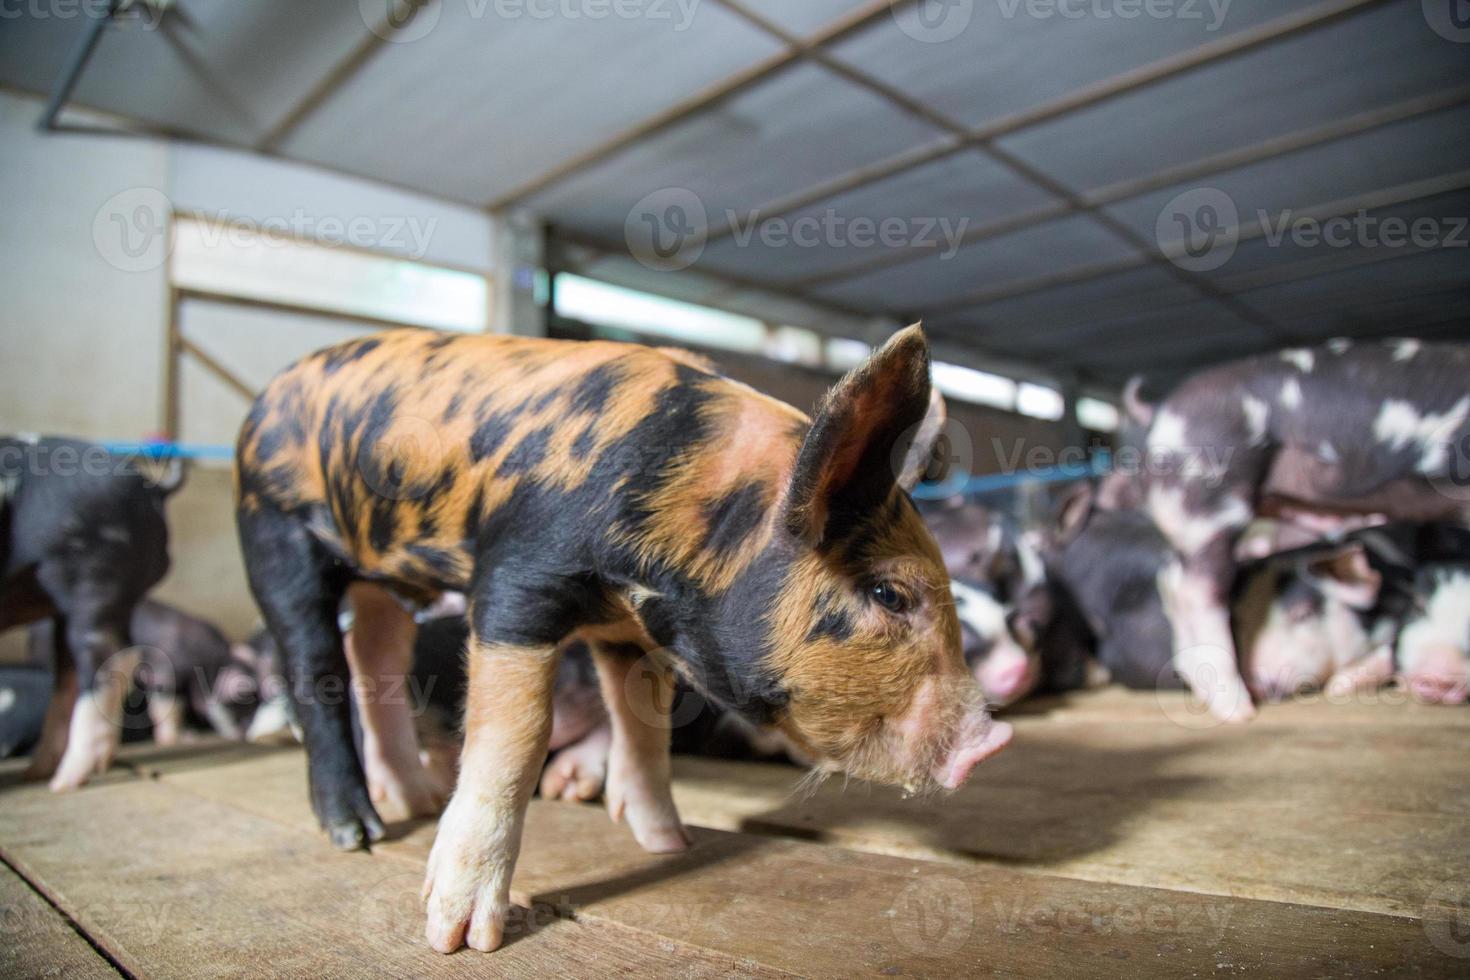 ferme d'élevage de porcs dans une entreprise porcine dans une ferme d'habitation intérieure bien rangée et propre, avec une mère de porc nourrissant un porcelet photo